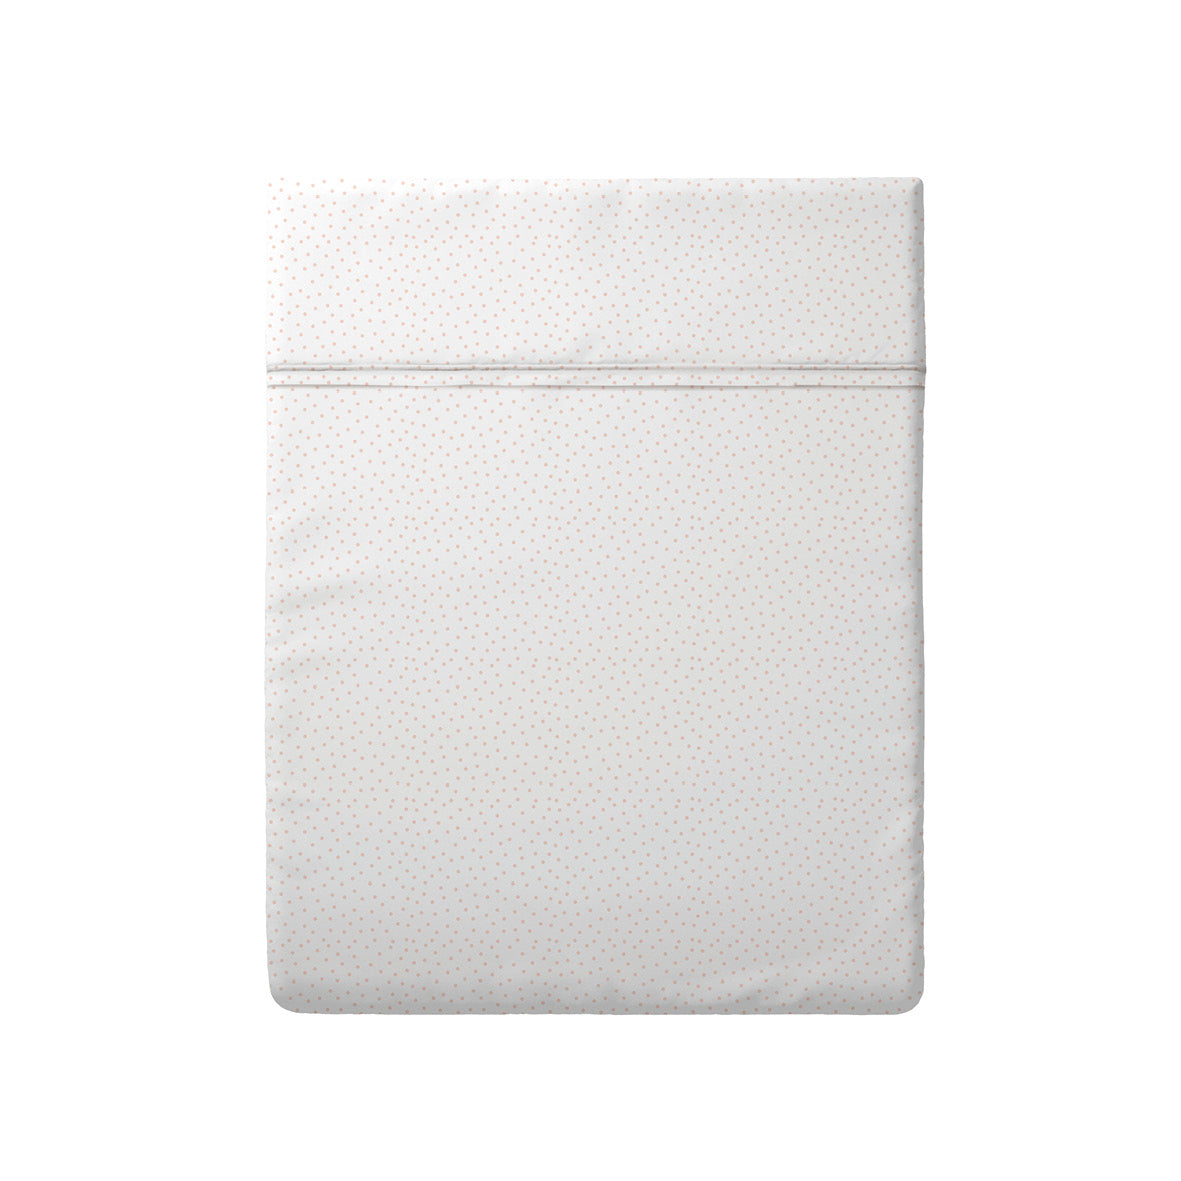 Flat sheet baby cotton satin - Petits Pois White